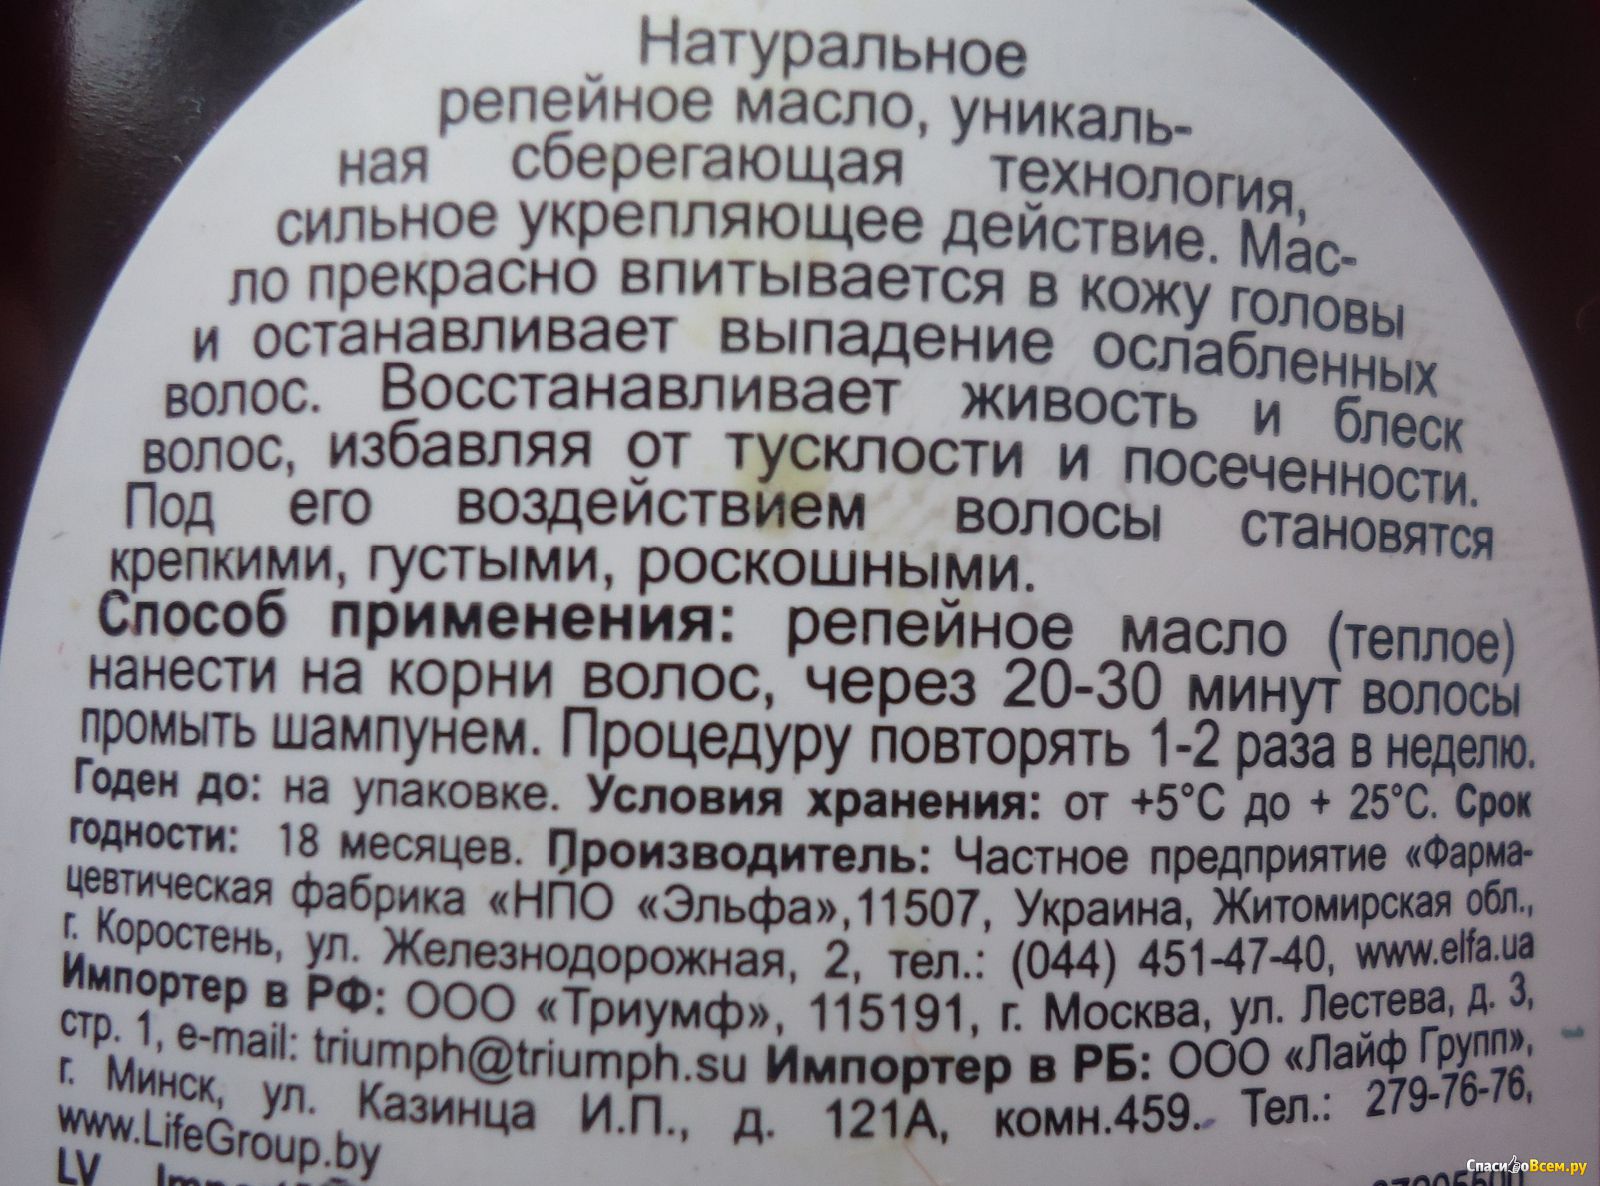 Масло перевод на русский